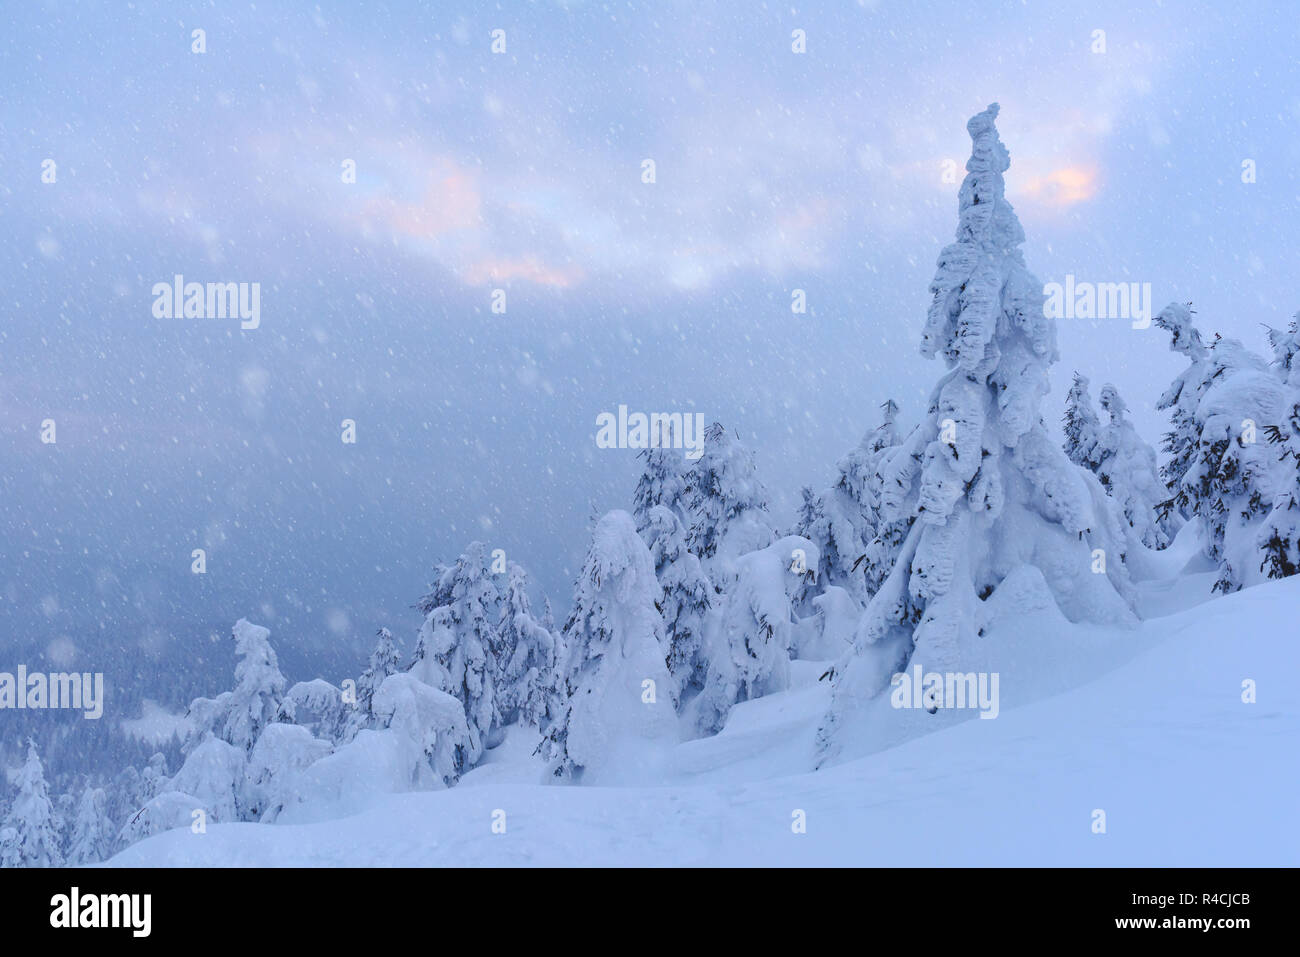 Fantastische Winterlandschaft mit verschneiten Bäumen. Karpaten, Ukraine, Europa. Weihnachten Konzept Stockfoto